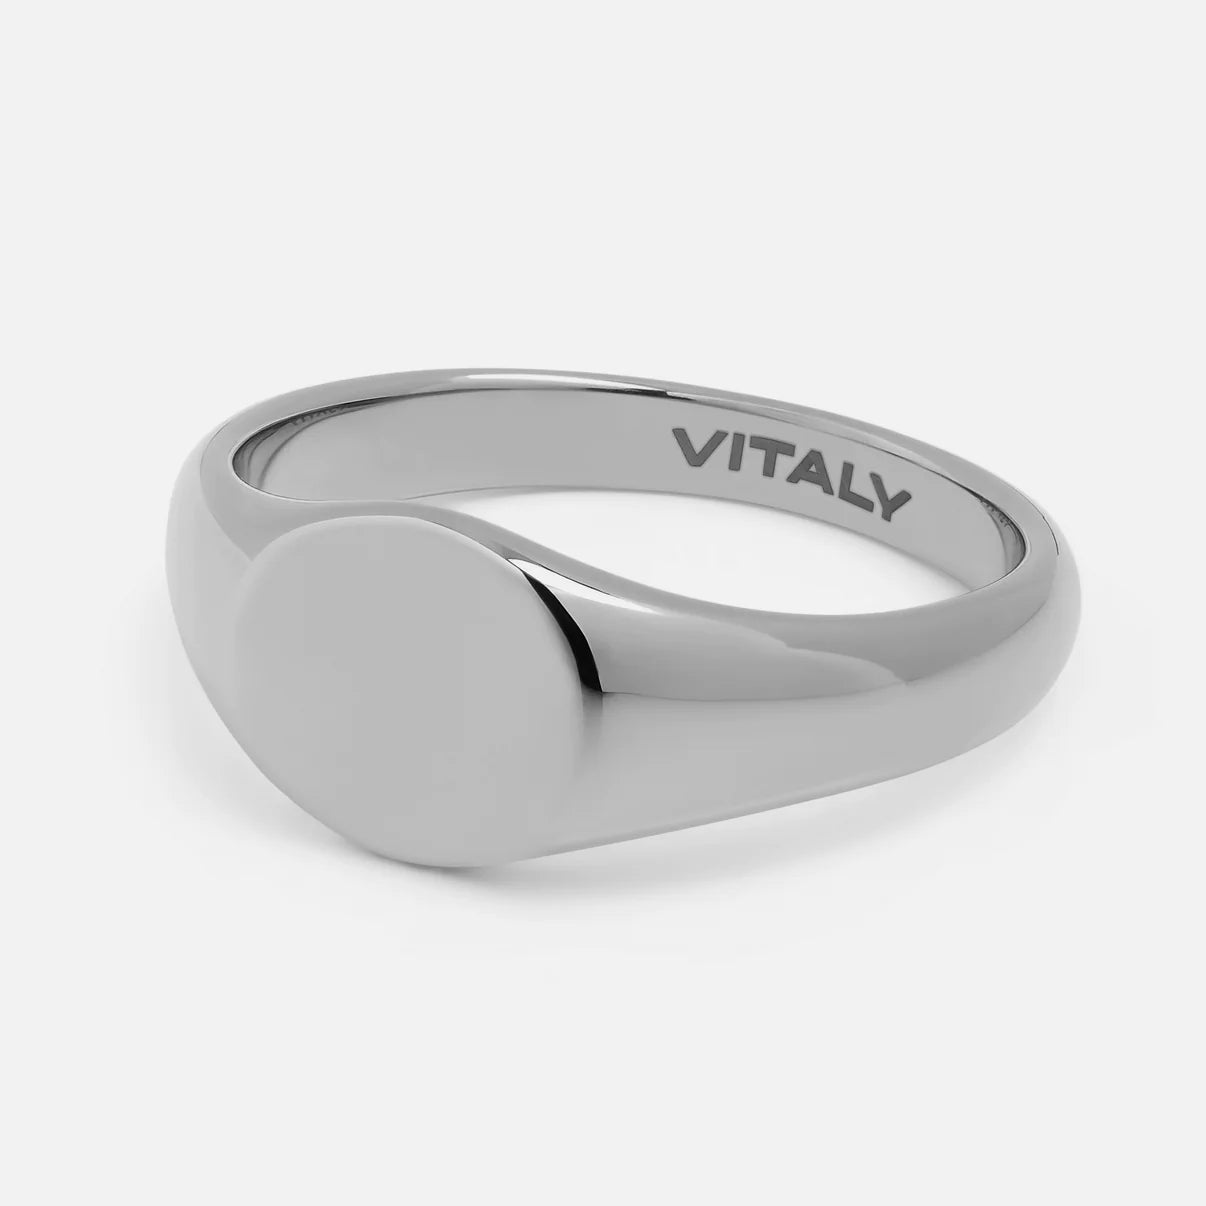 Vitaly Solar Ring 'Stainless Steel'